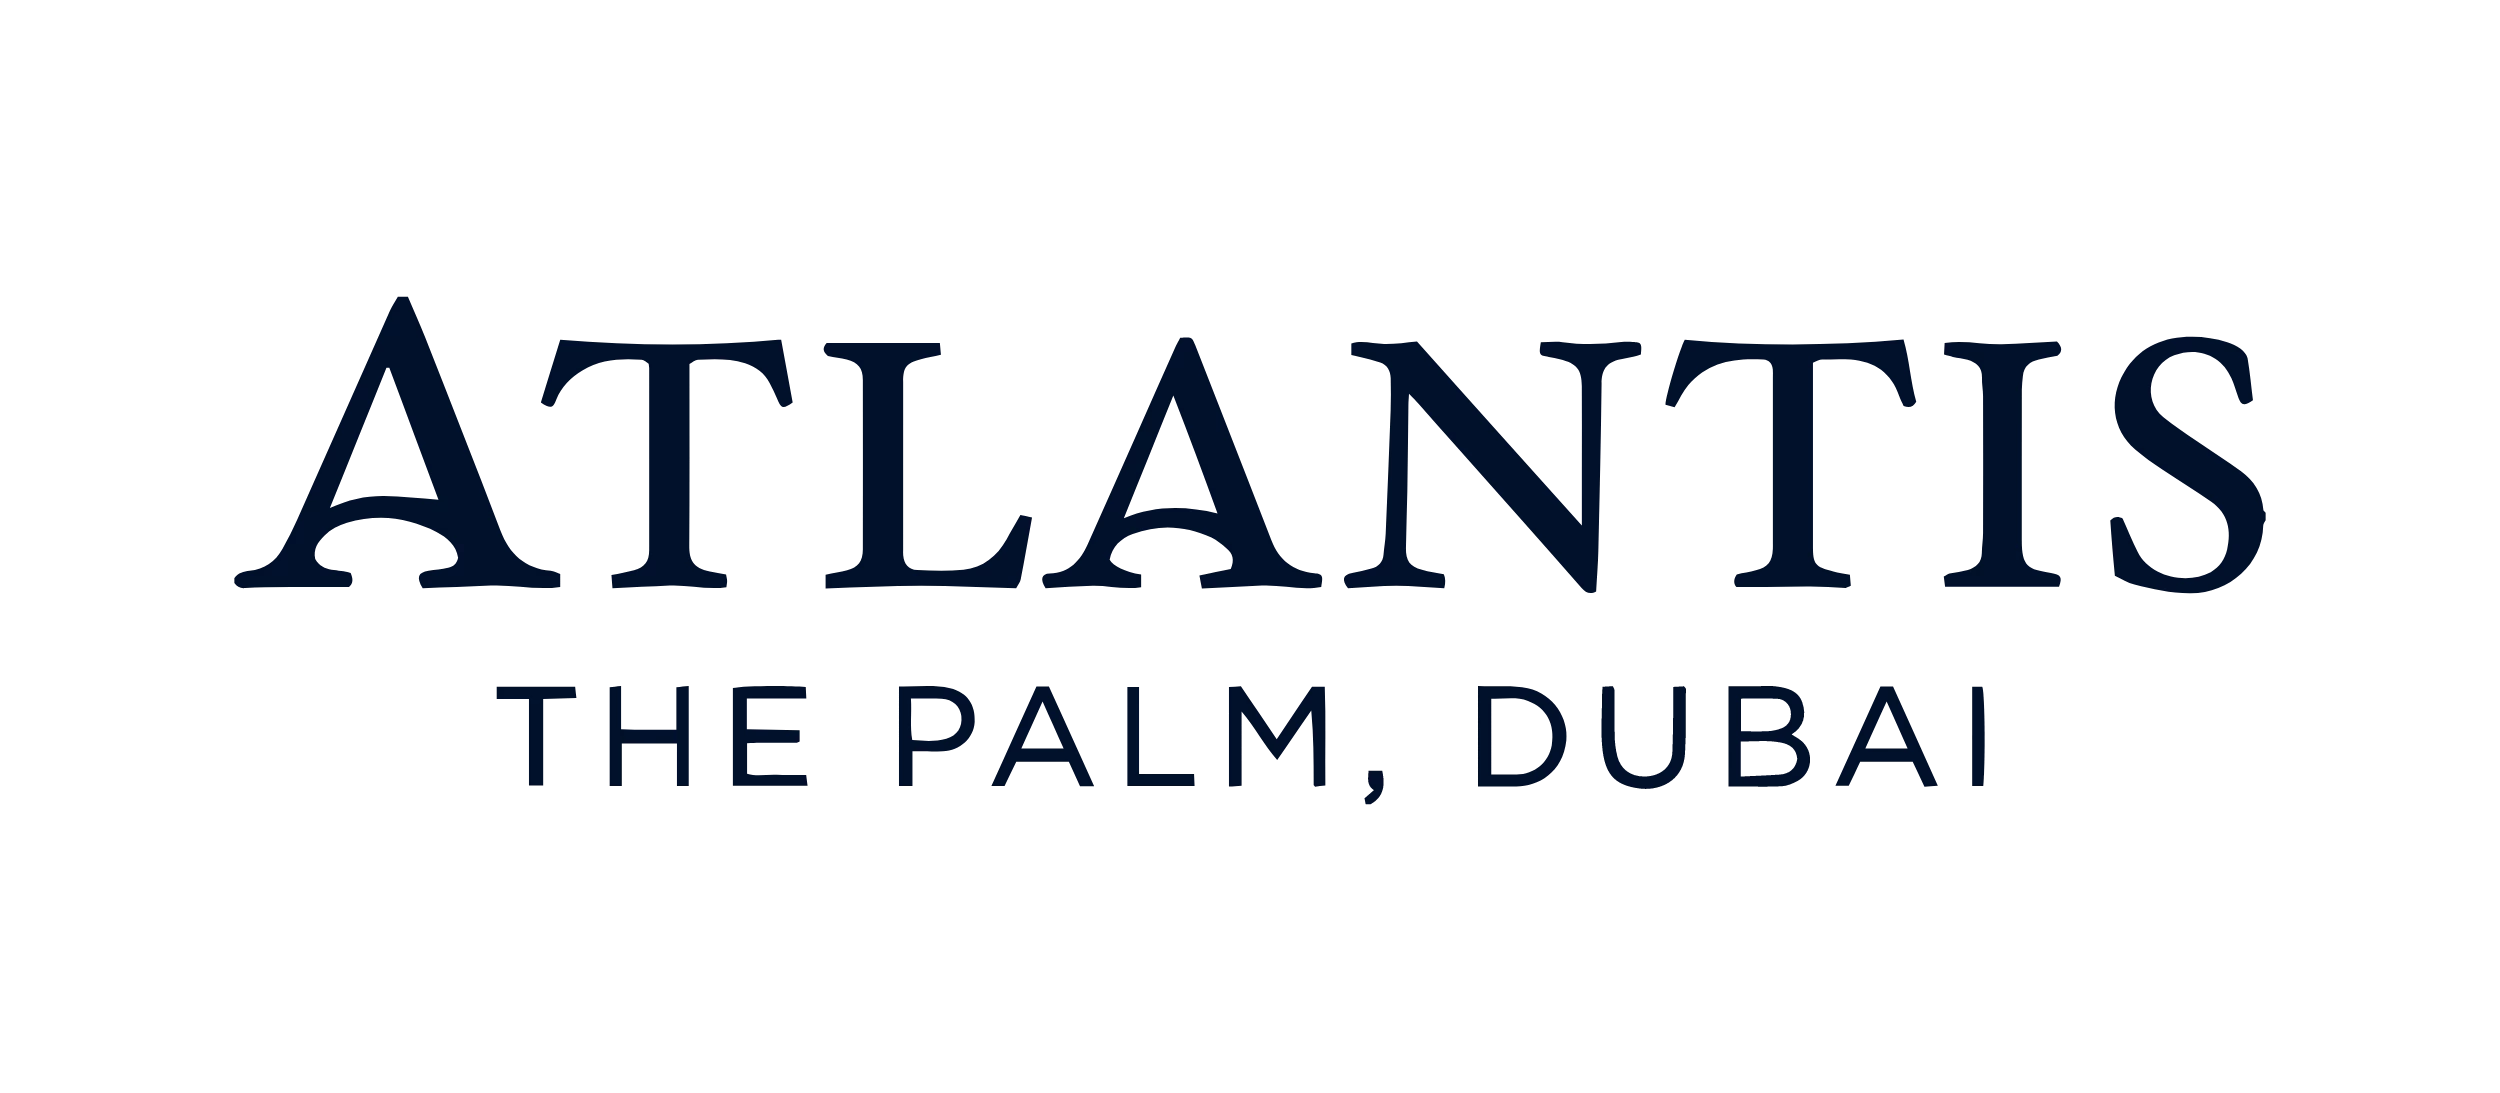 Atlantis logo